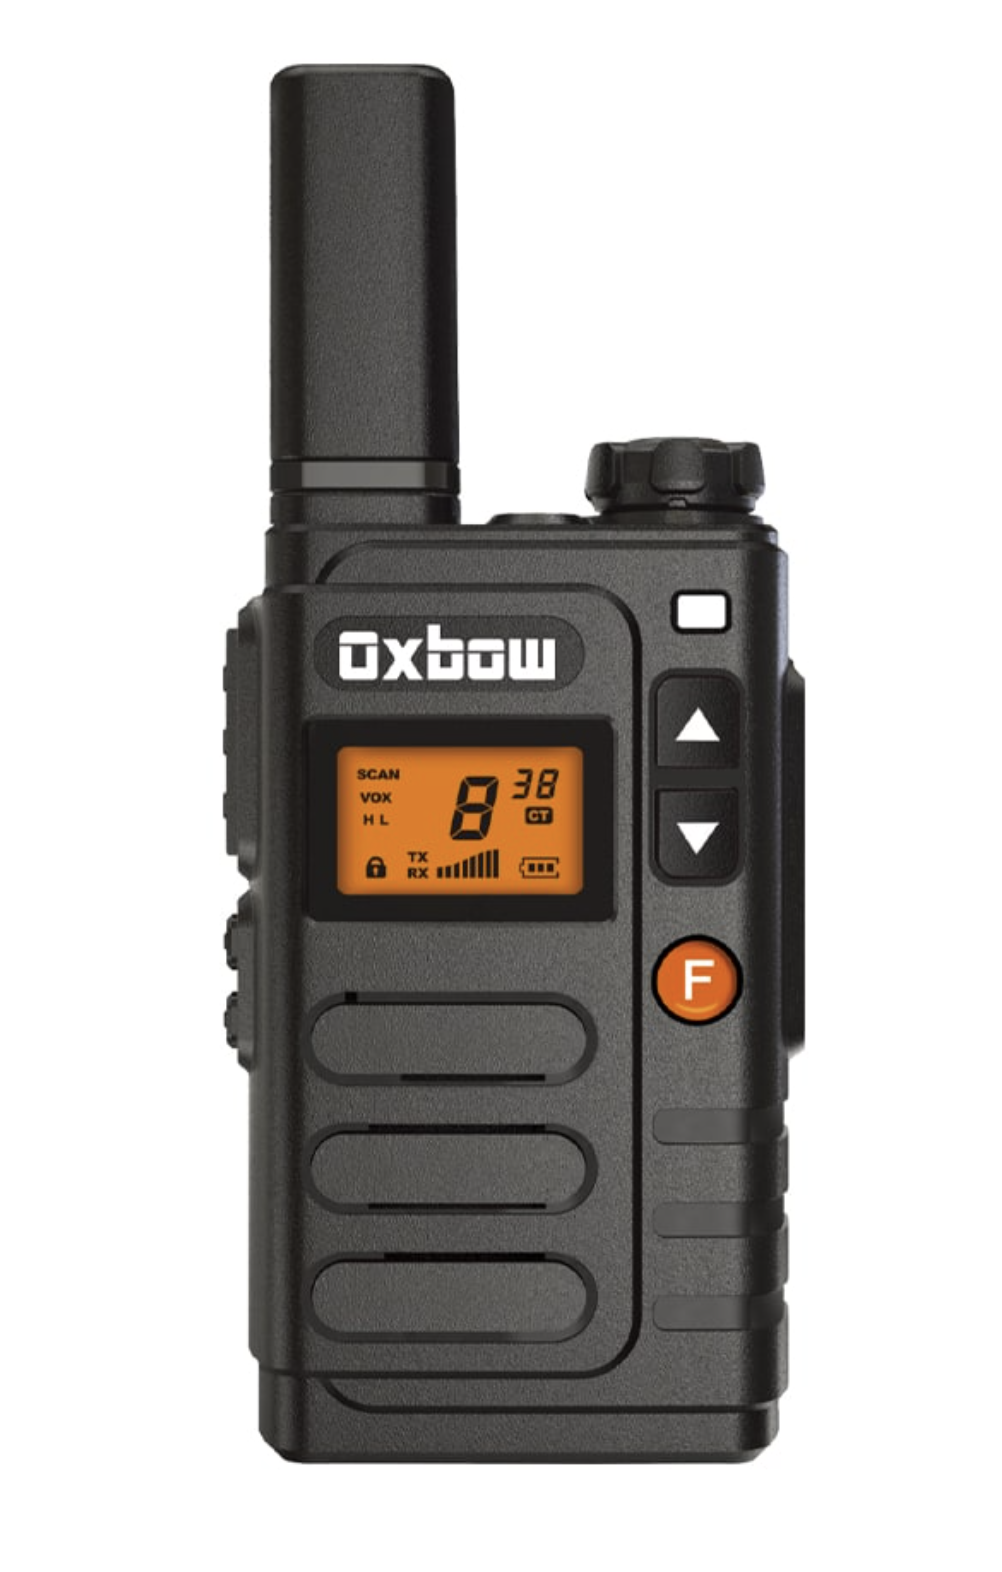 Oxbow dirt bike radio system